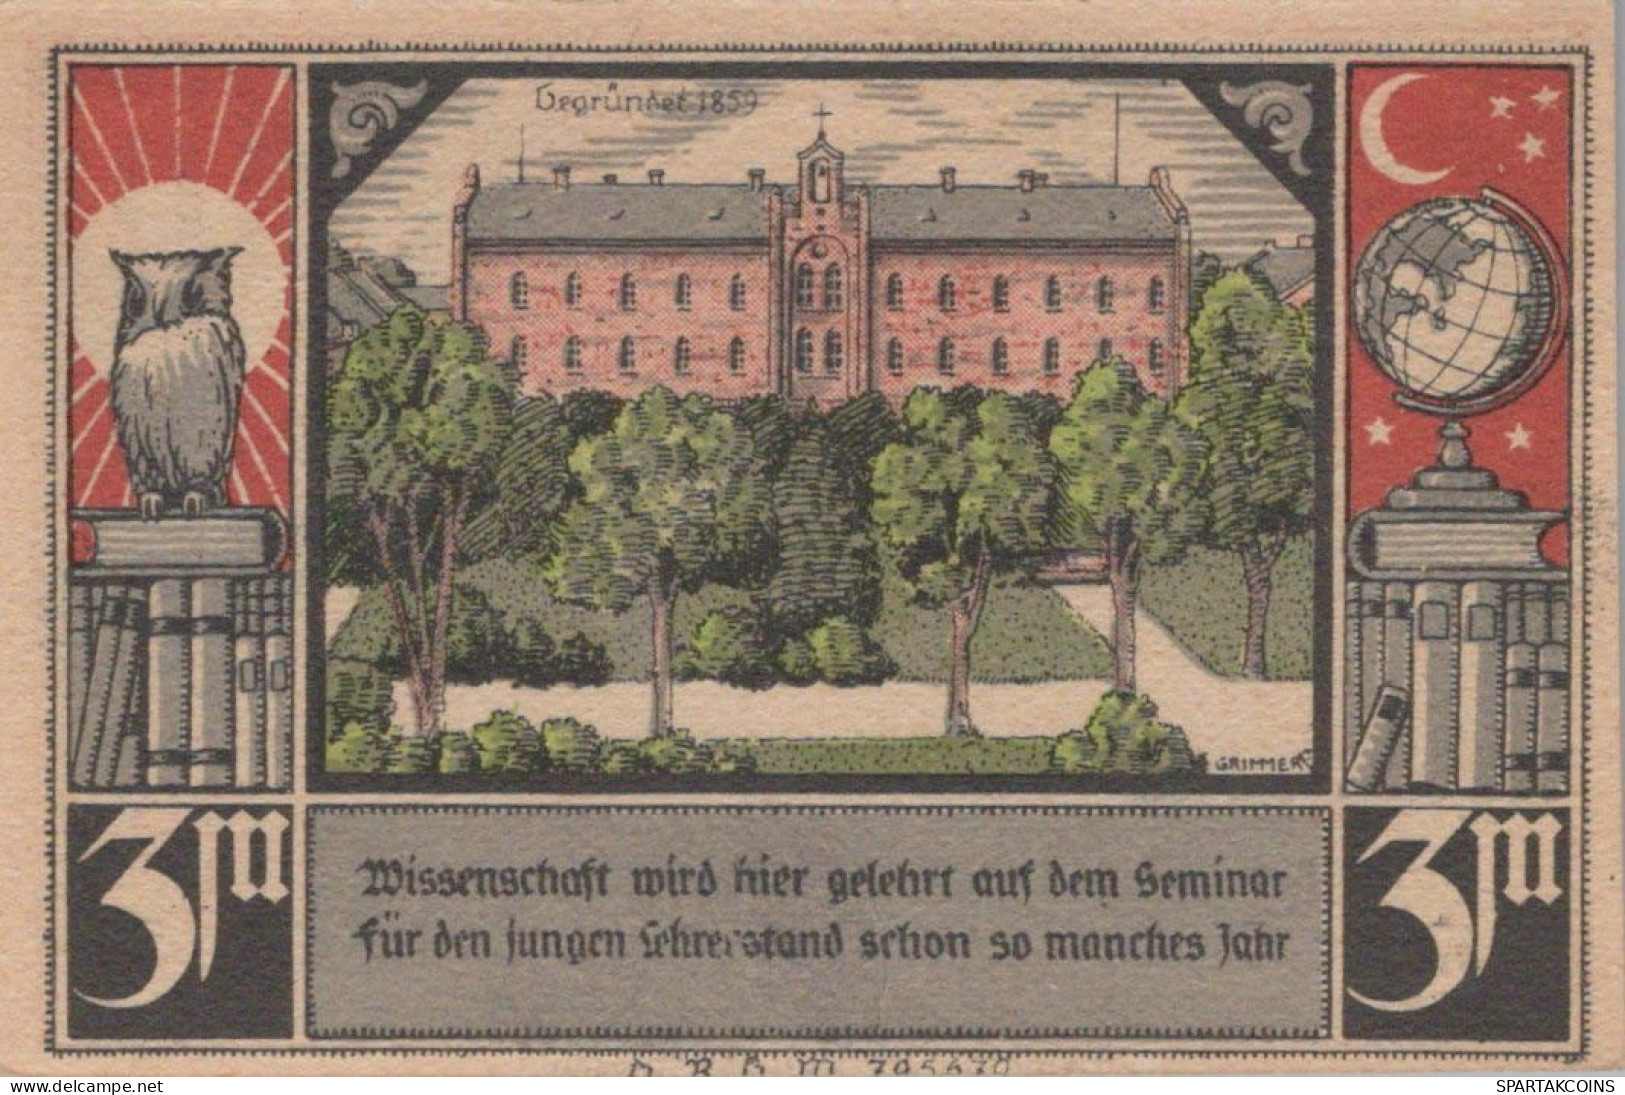 3 MARK 1914-1924 Stadt BÜTOW Pomerania UNC DEUTSCHLAND Notgeld Banknote #PA340 - [11] Emissioni Locali